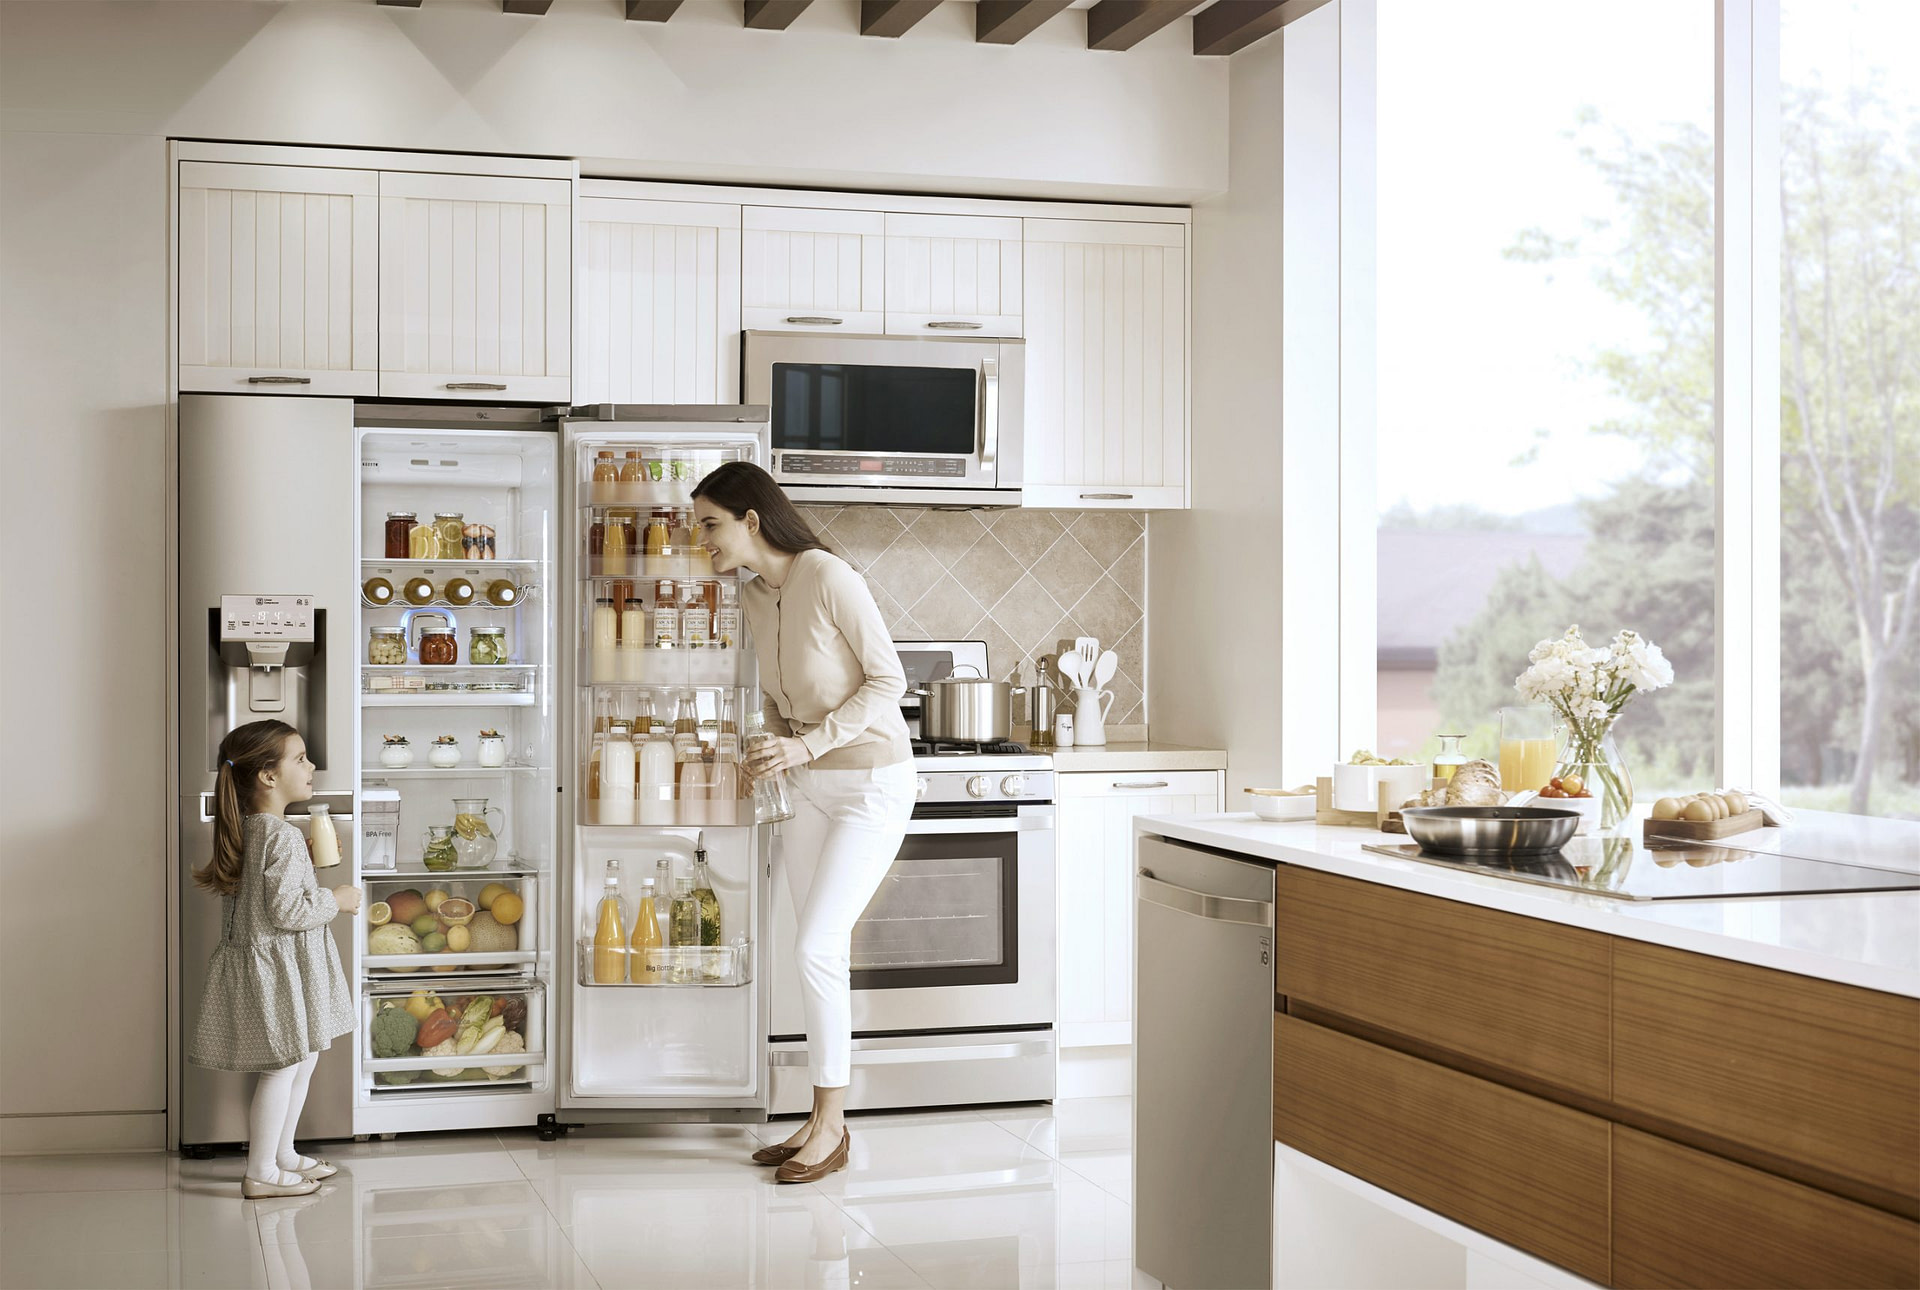 kitchen design with fridge